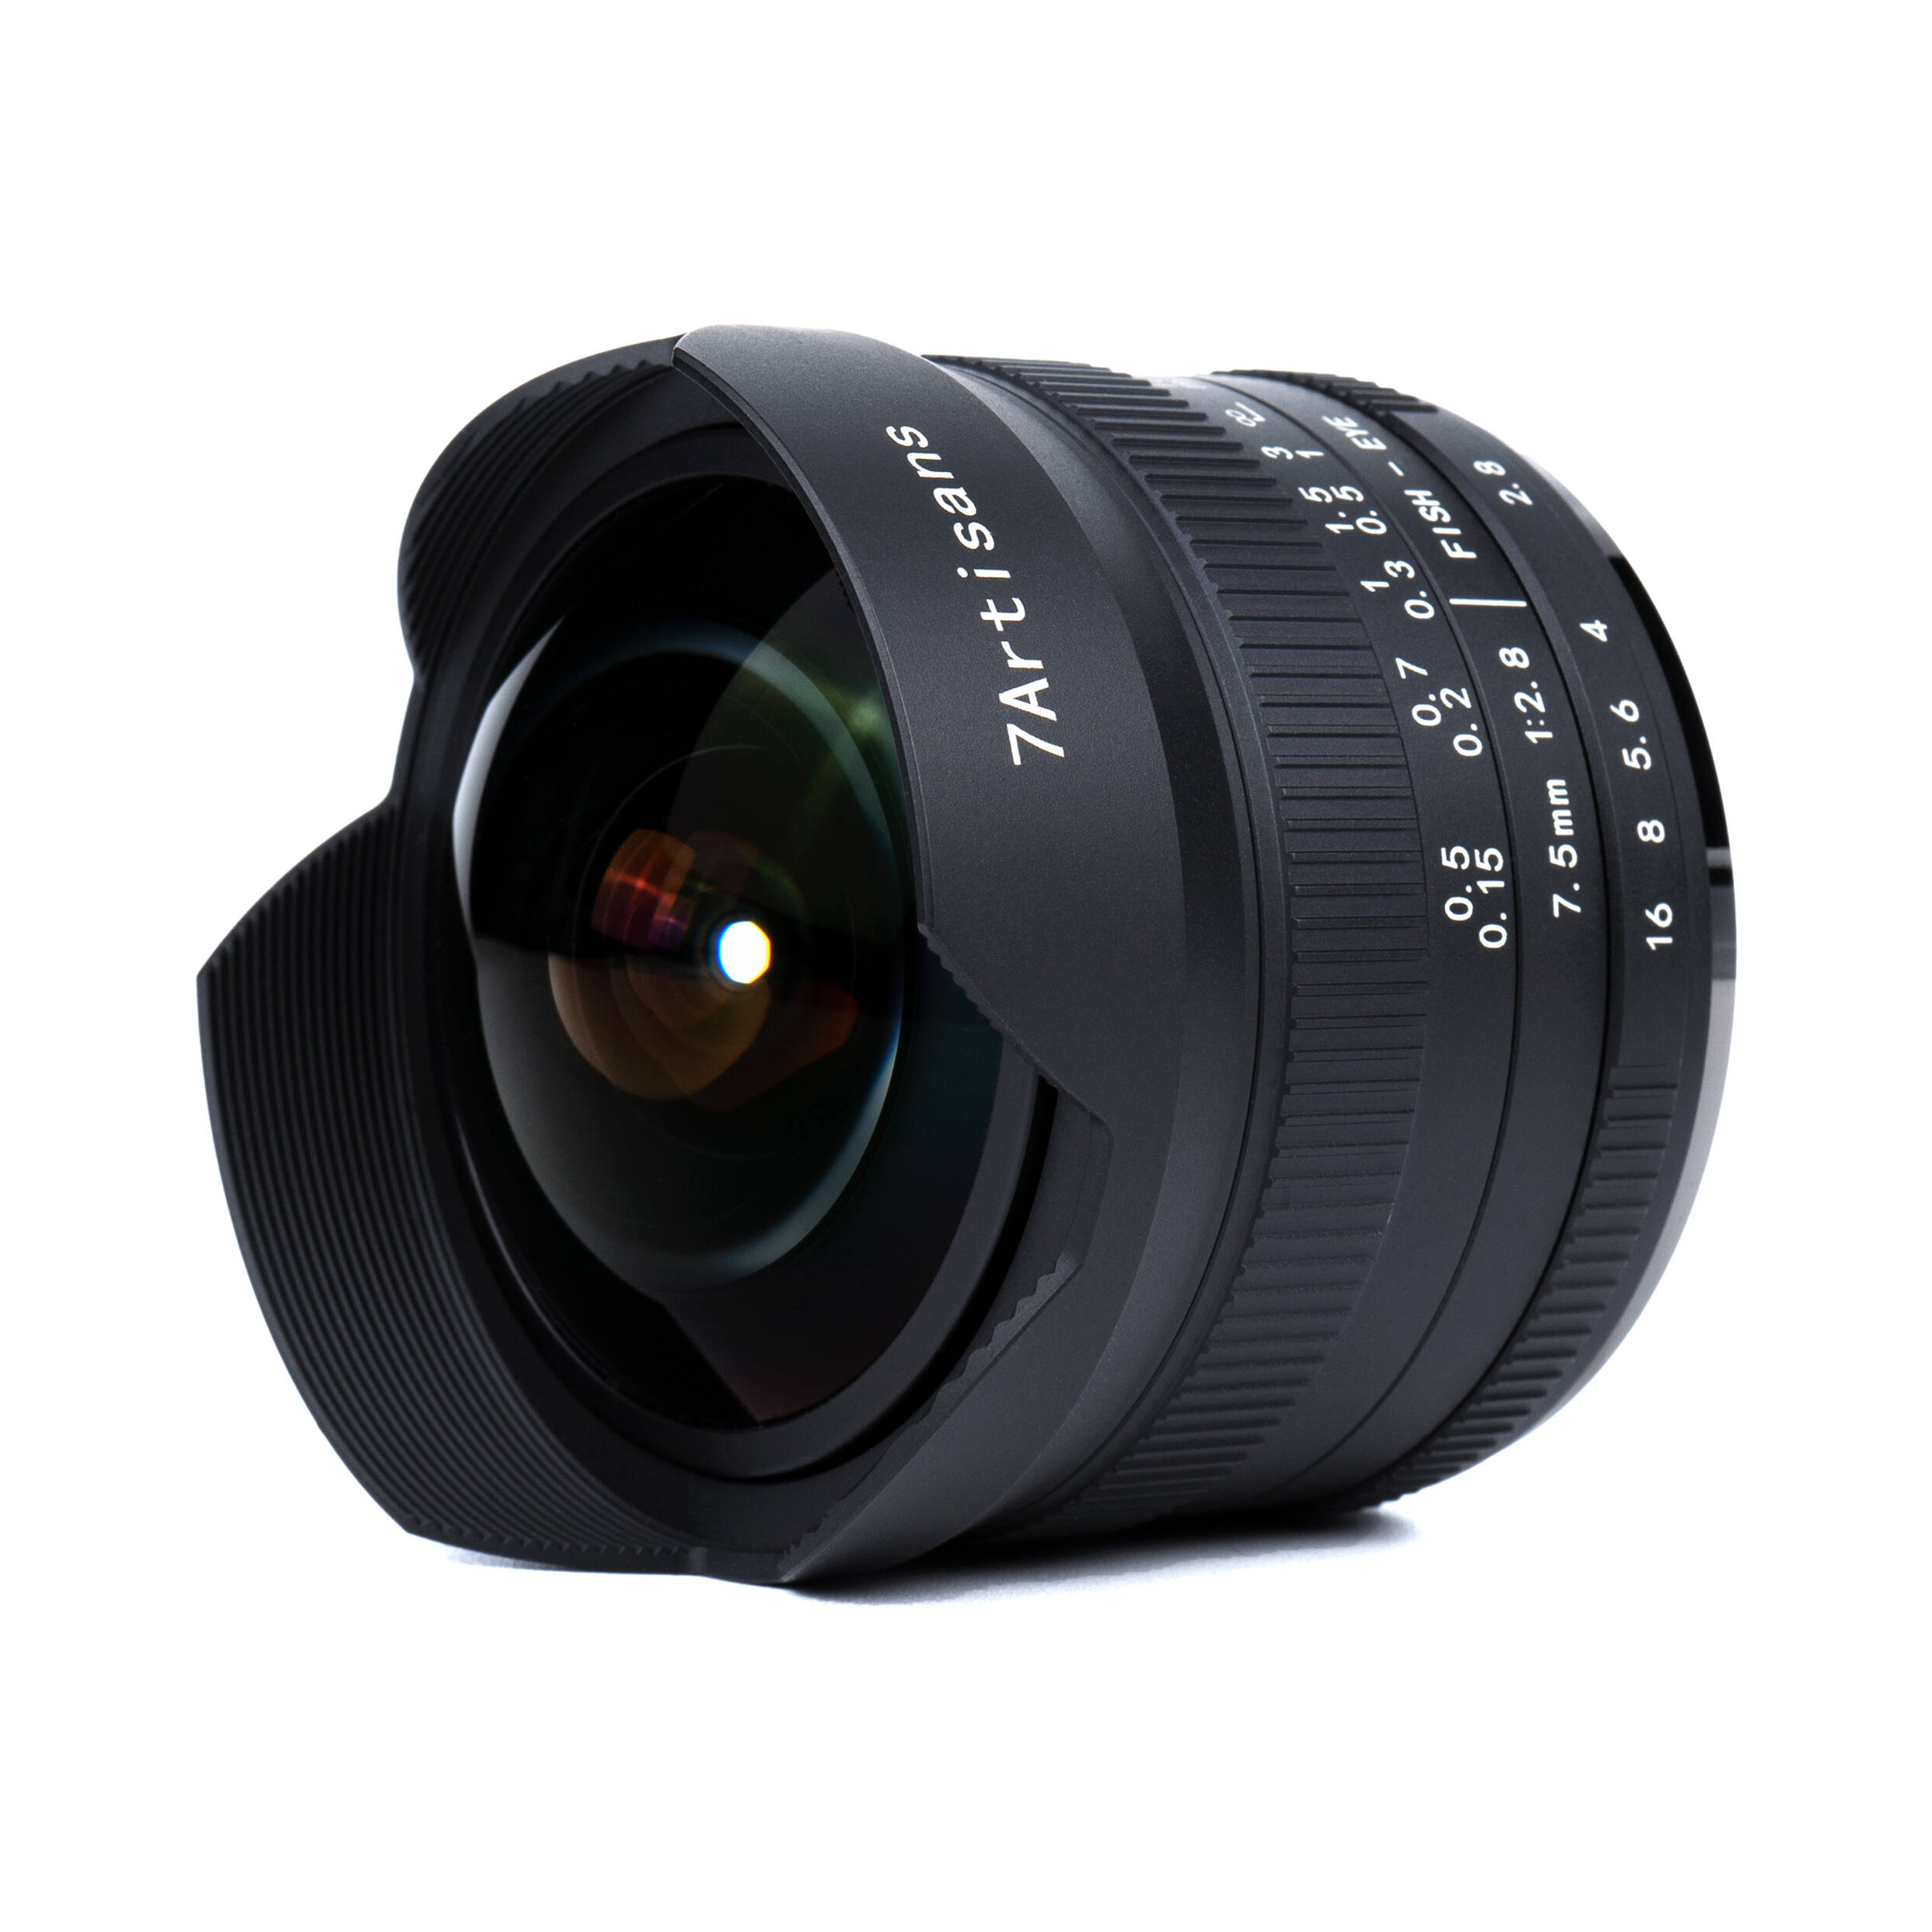 7artisans Photoelectric 7.5mm f/2.8 II Fisheye Lens for Sony E Mount